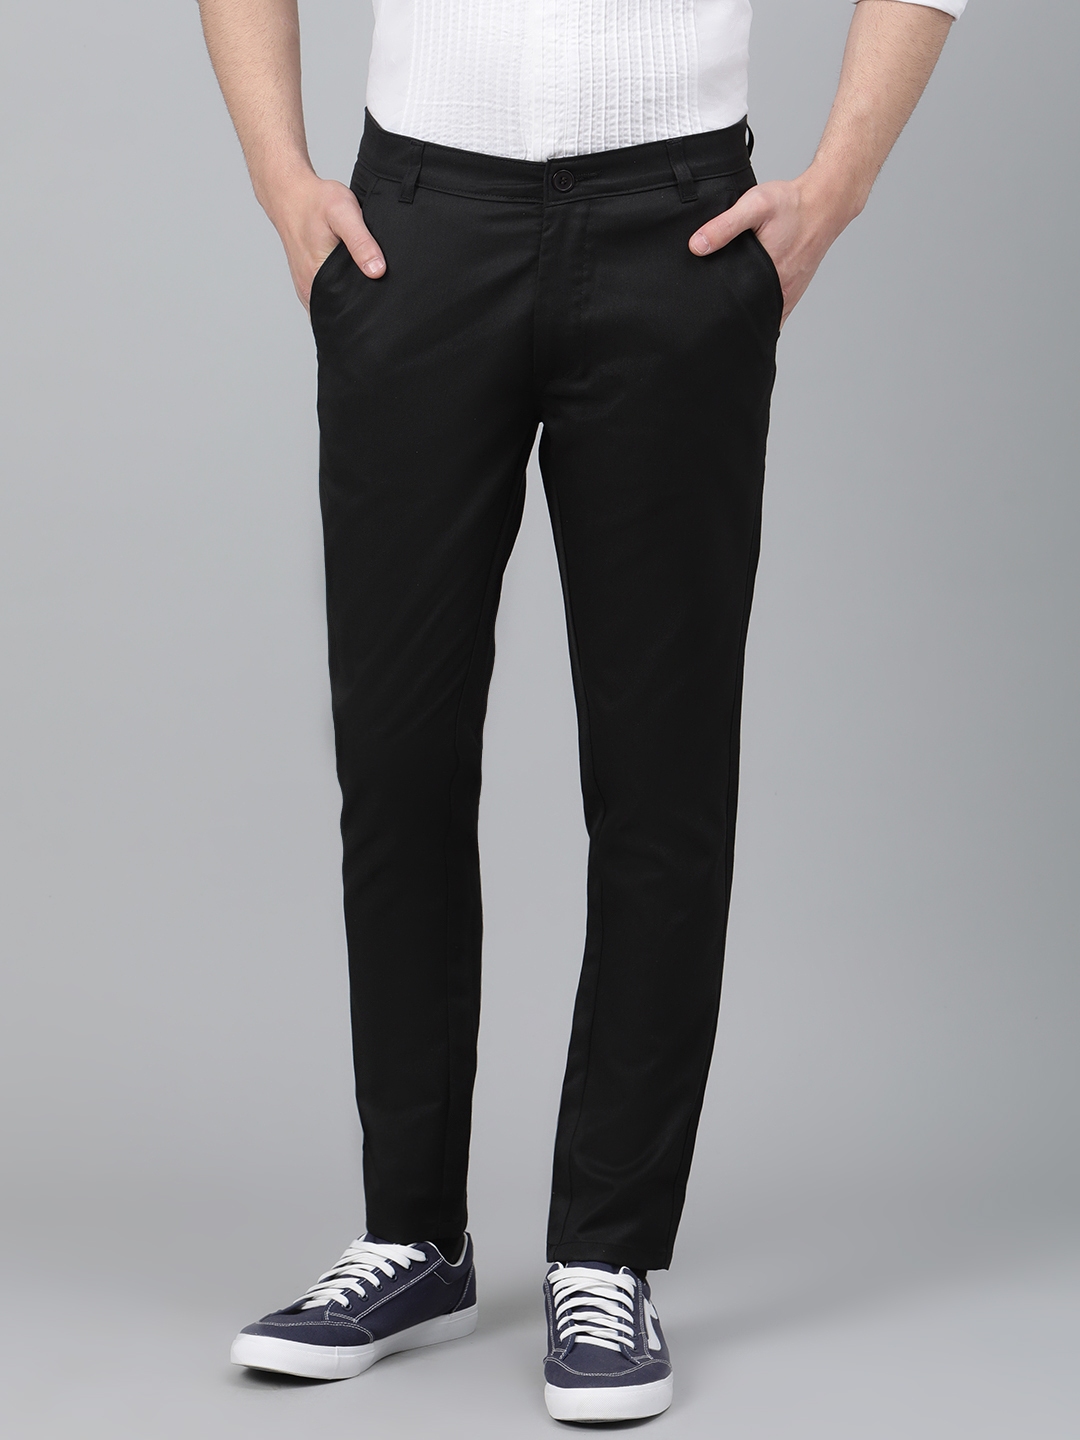 Buy DENNISON Men Black Smart Tapered Fit Solid Regular Trousers ...